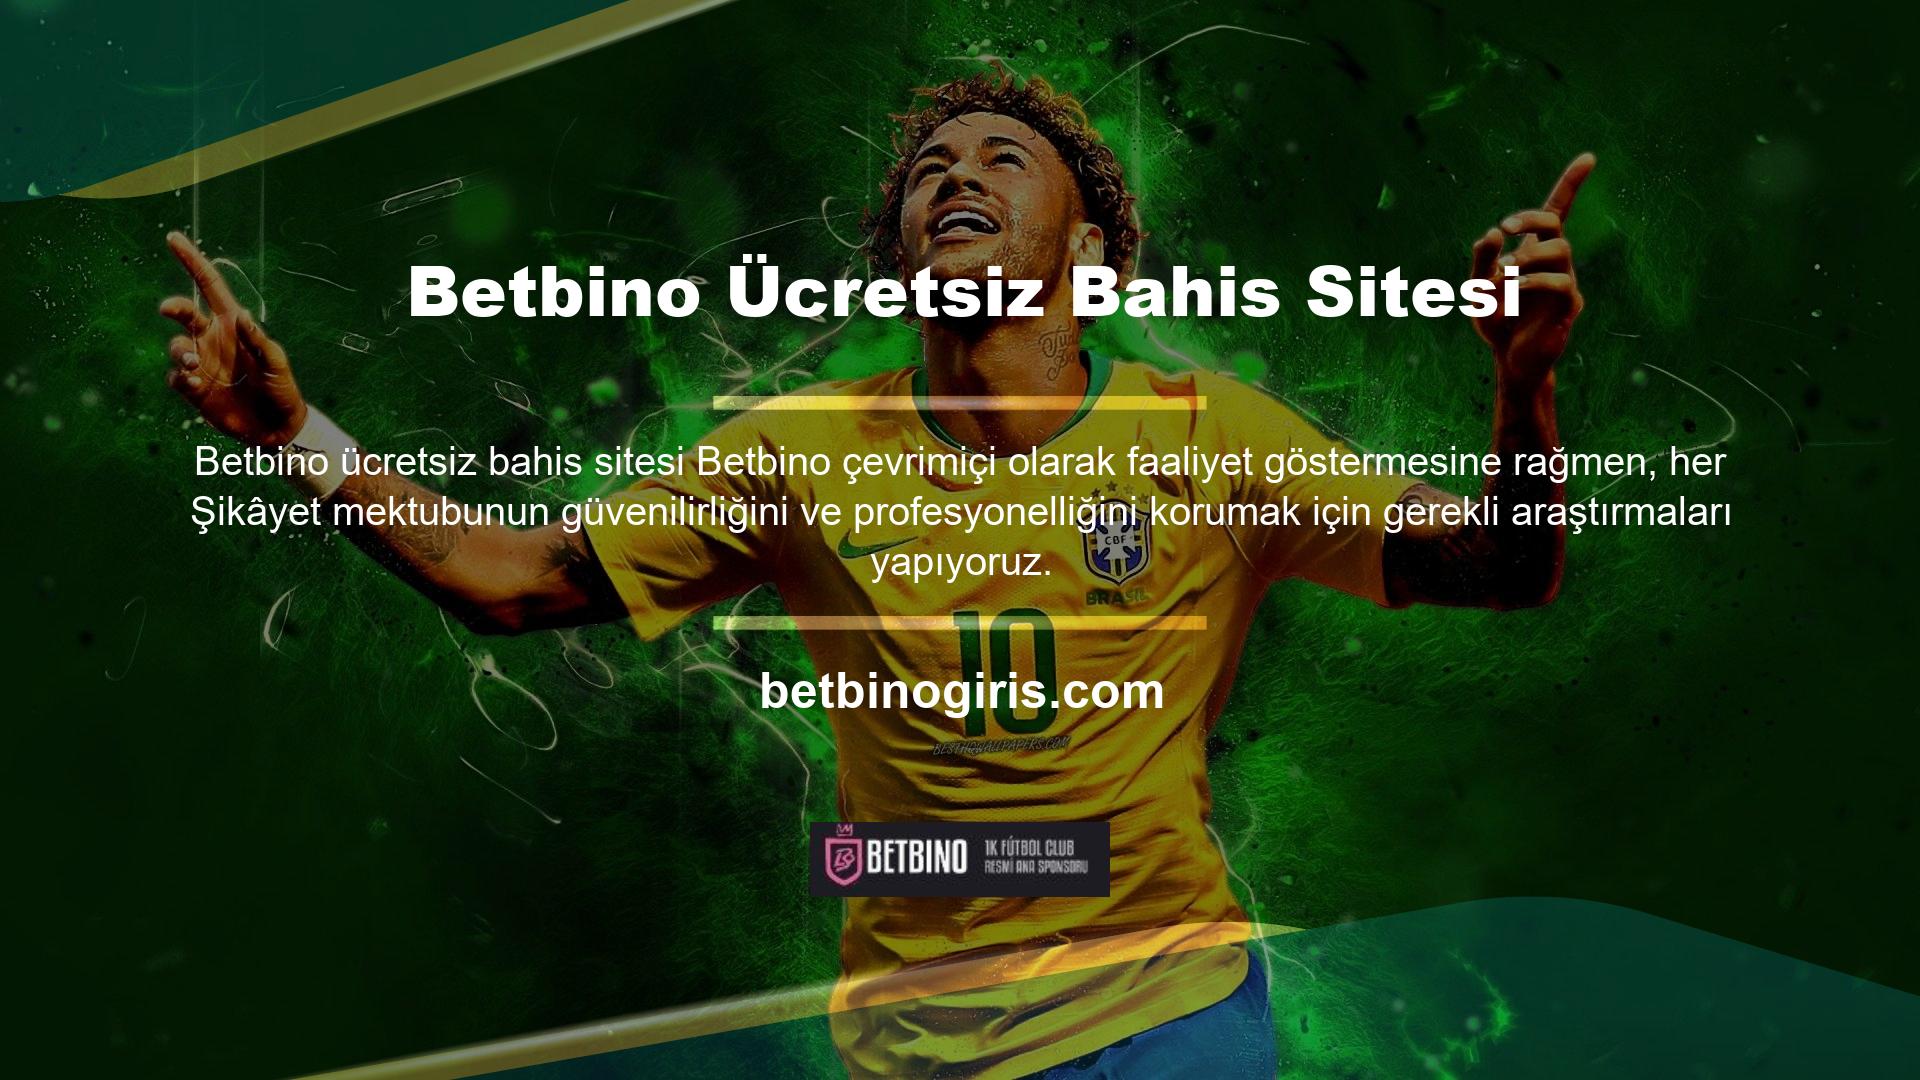 Betbino ücretsiz bahis sitelerinin mağduru olduğu bilinen kişiler, üye olmasalar bile casino sitelerinde rekabet etmektedir